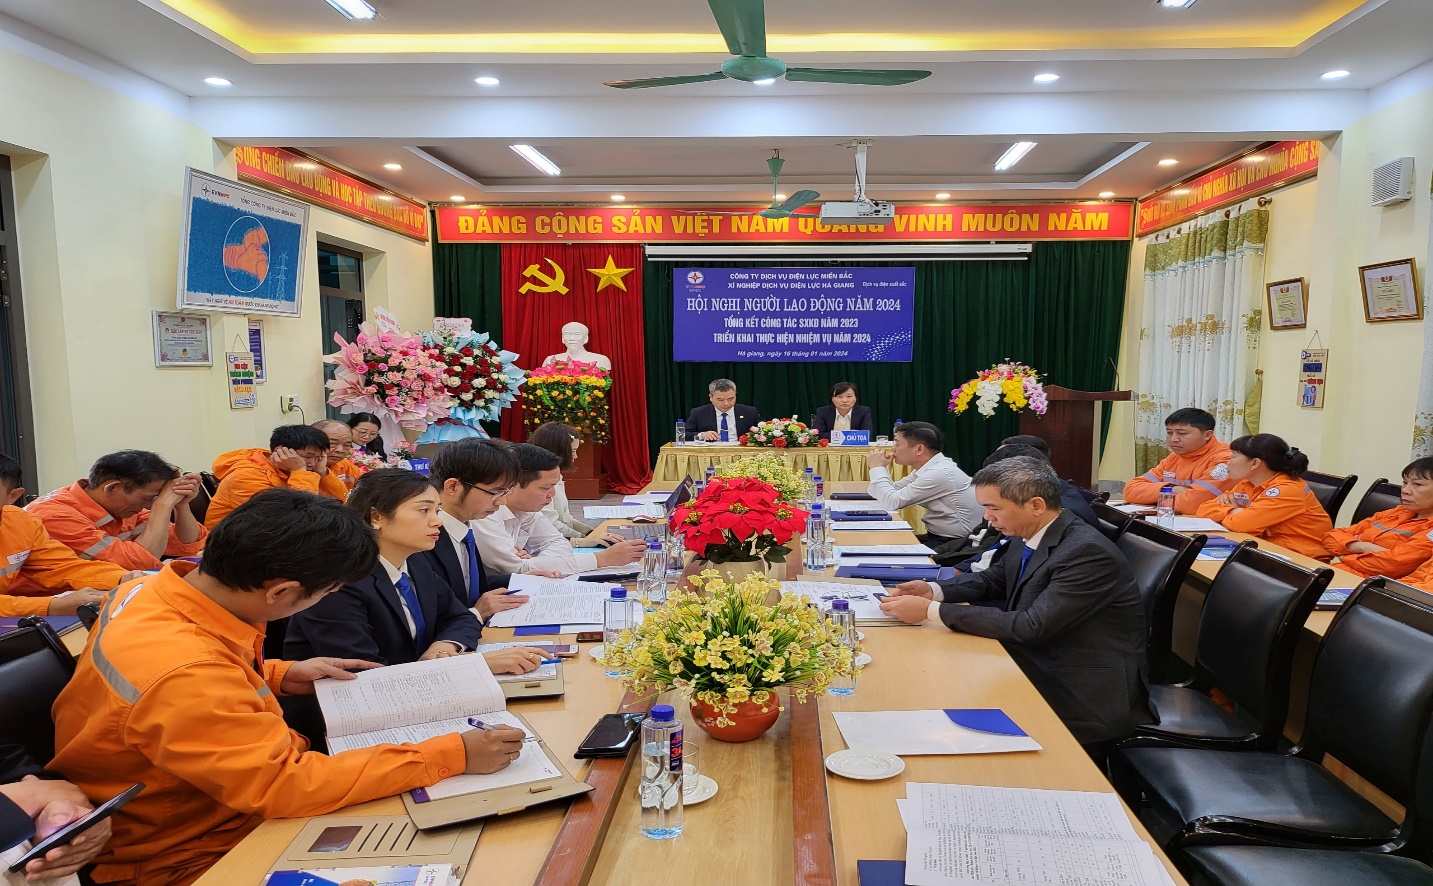 Xí nghiệp Dịch vụ Điện lực Hà Giang tổ chức Hội nghị người lao động năm 2024 và Hội nghị Tổng kết công tác SXKD năm 2023, triển khai nhiệm vụ năm 2024